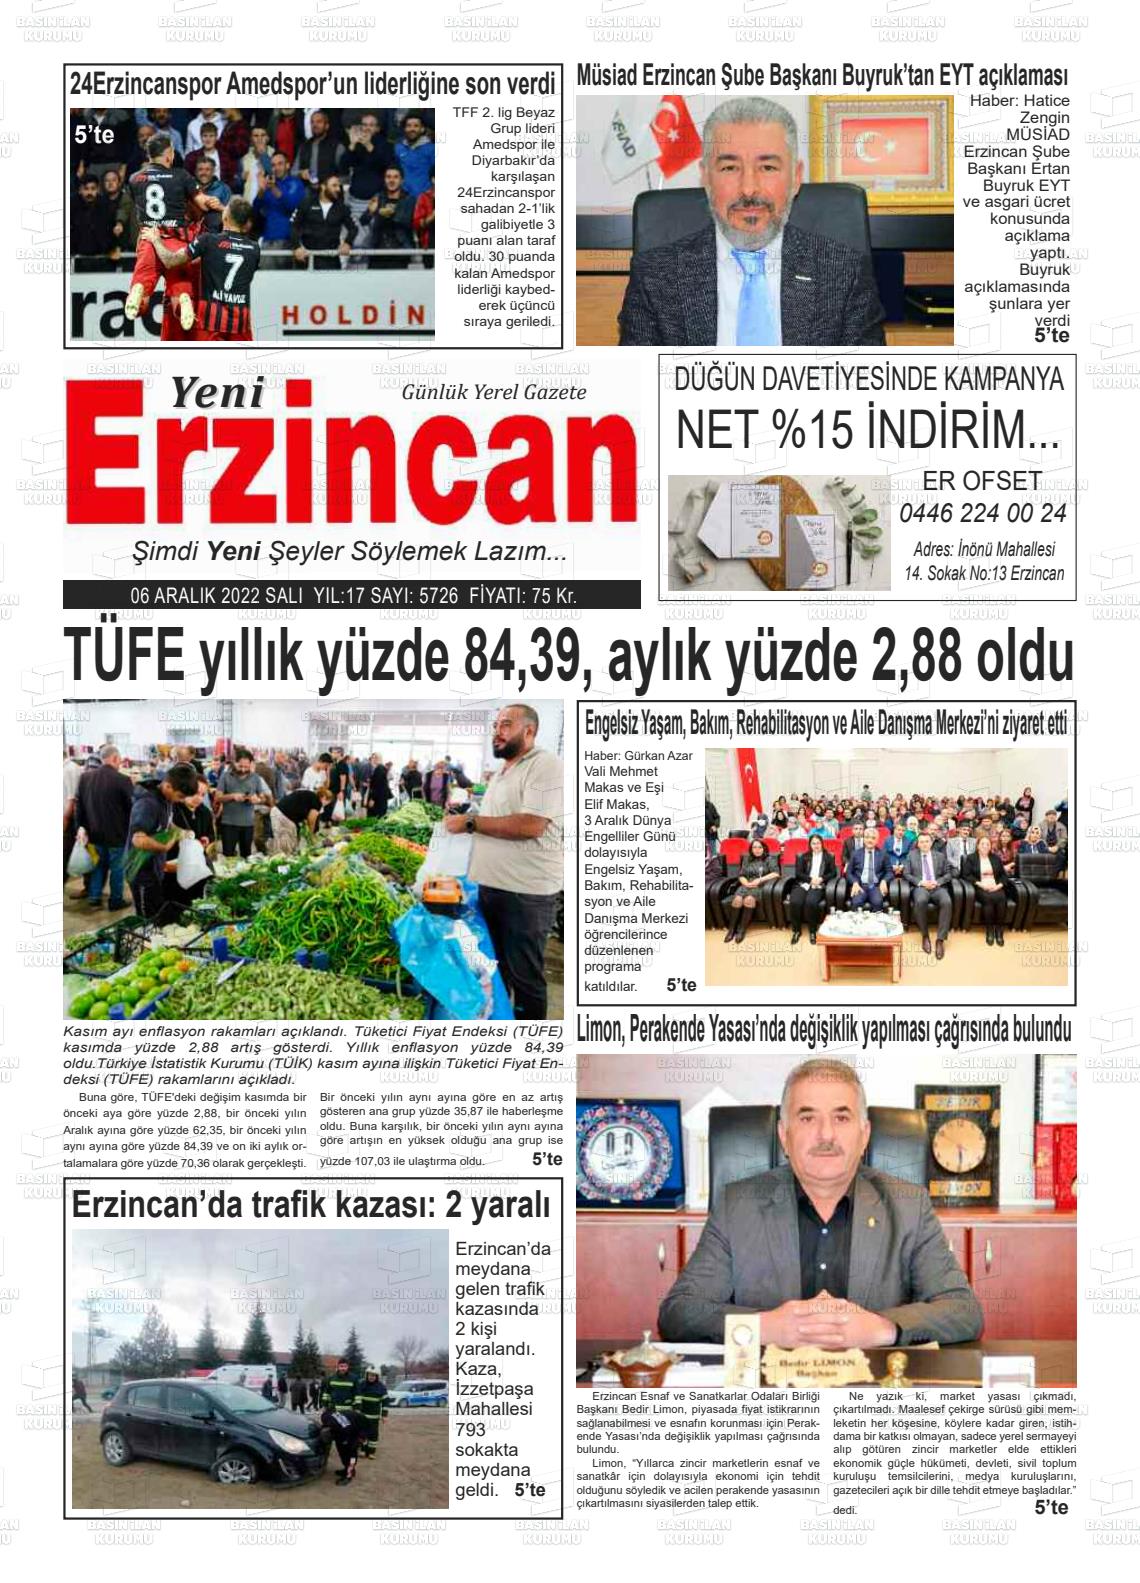 06 Aralık 2022 Yeni Erzincan Gazete Manşeti